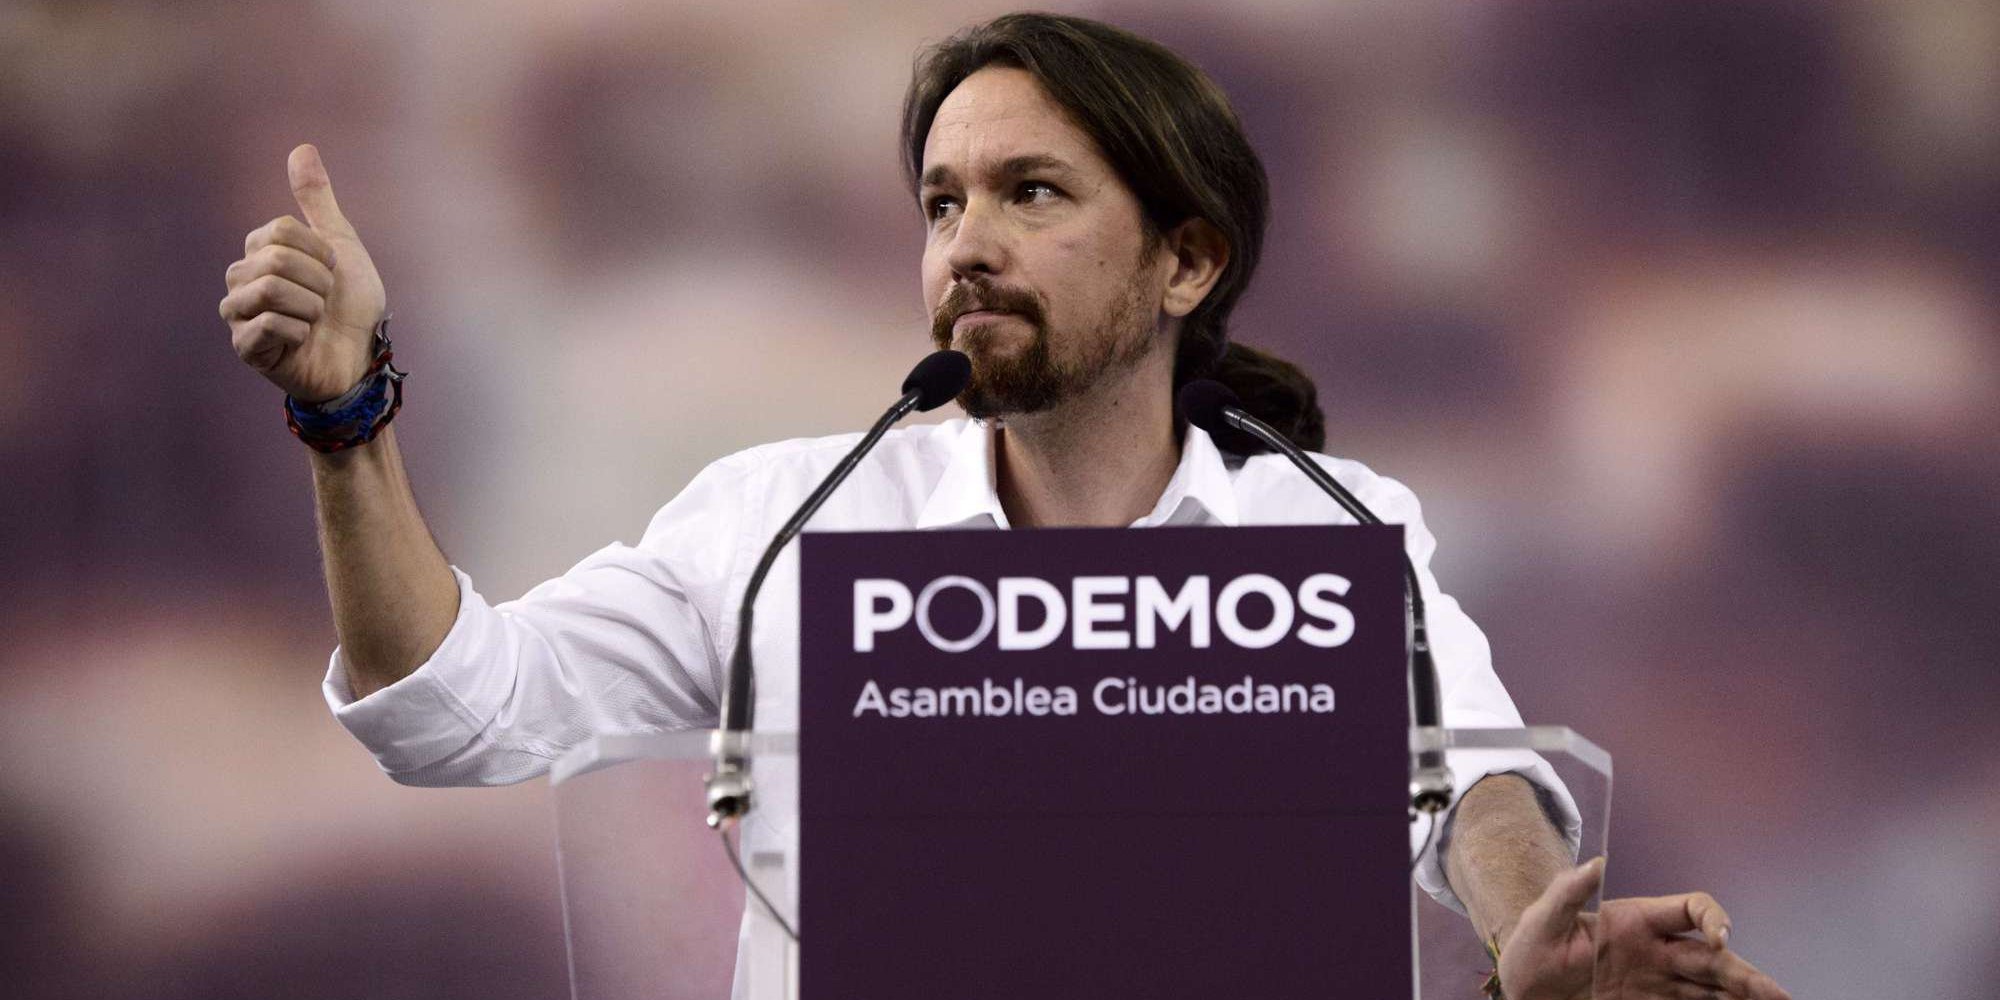 Στην Ισπανία αντιπροσωπεία του ΣΥΡΙΖΑ για να στηρίξει τους Podemos